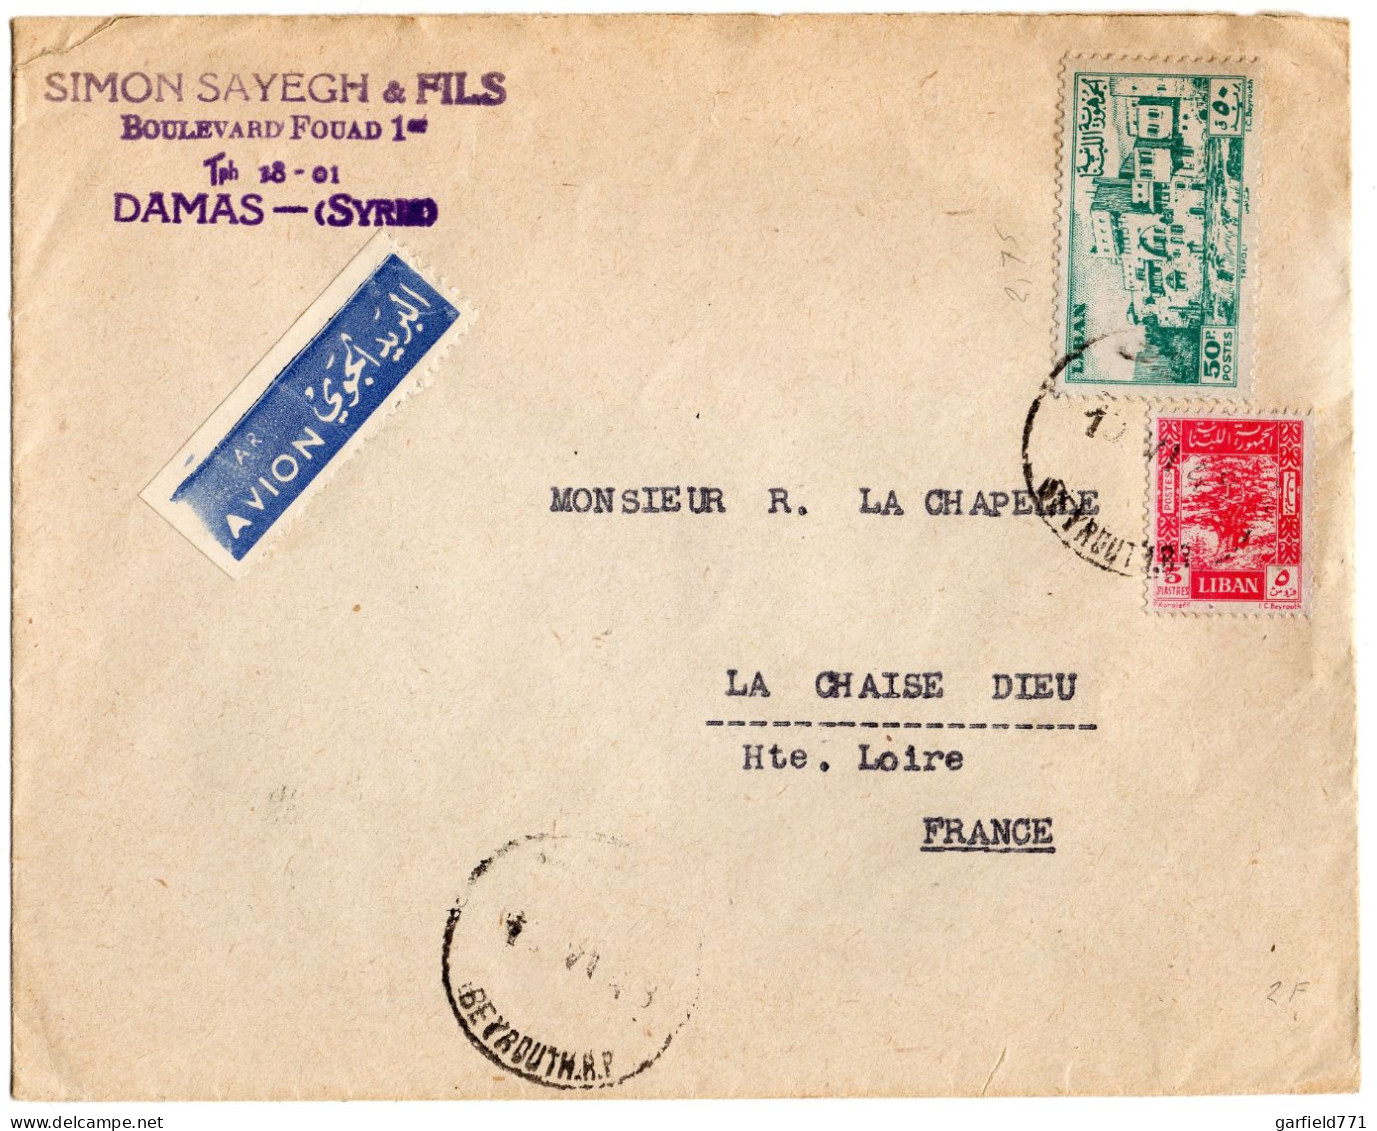 LIBAN Fiscaux Revenue N° 201h (verso) Lettre Par Avion (sticker Rare) / France - 1945 - Liban